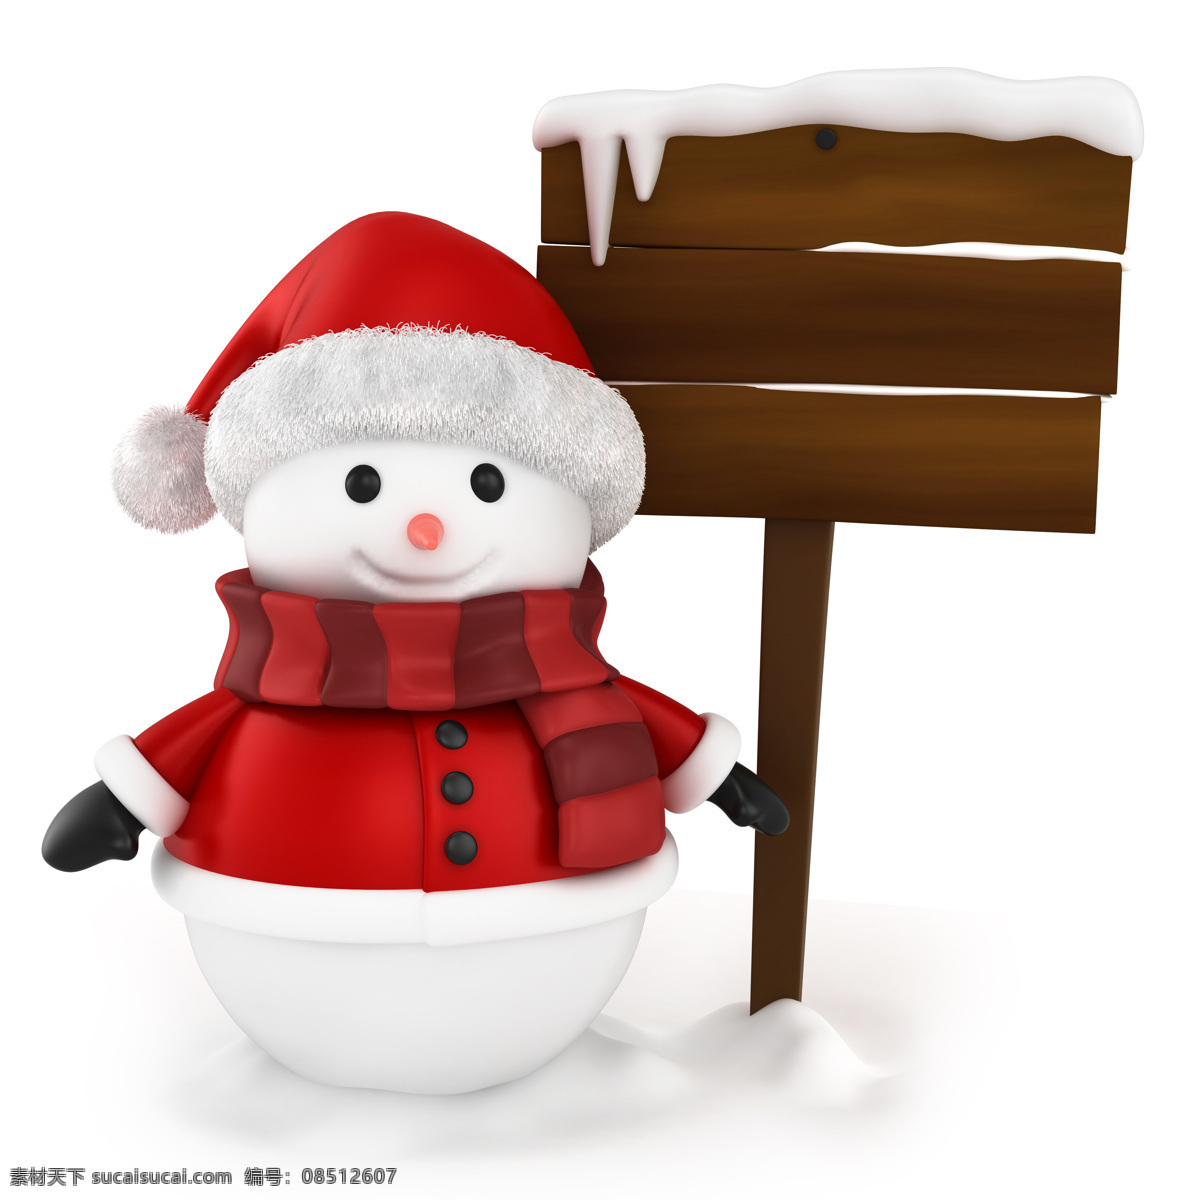 木板 前 微笑 雪人 卡通画 微笑的雪人 圣诞帽 围巾 白雪 节日庆典 生活百科 白色